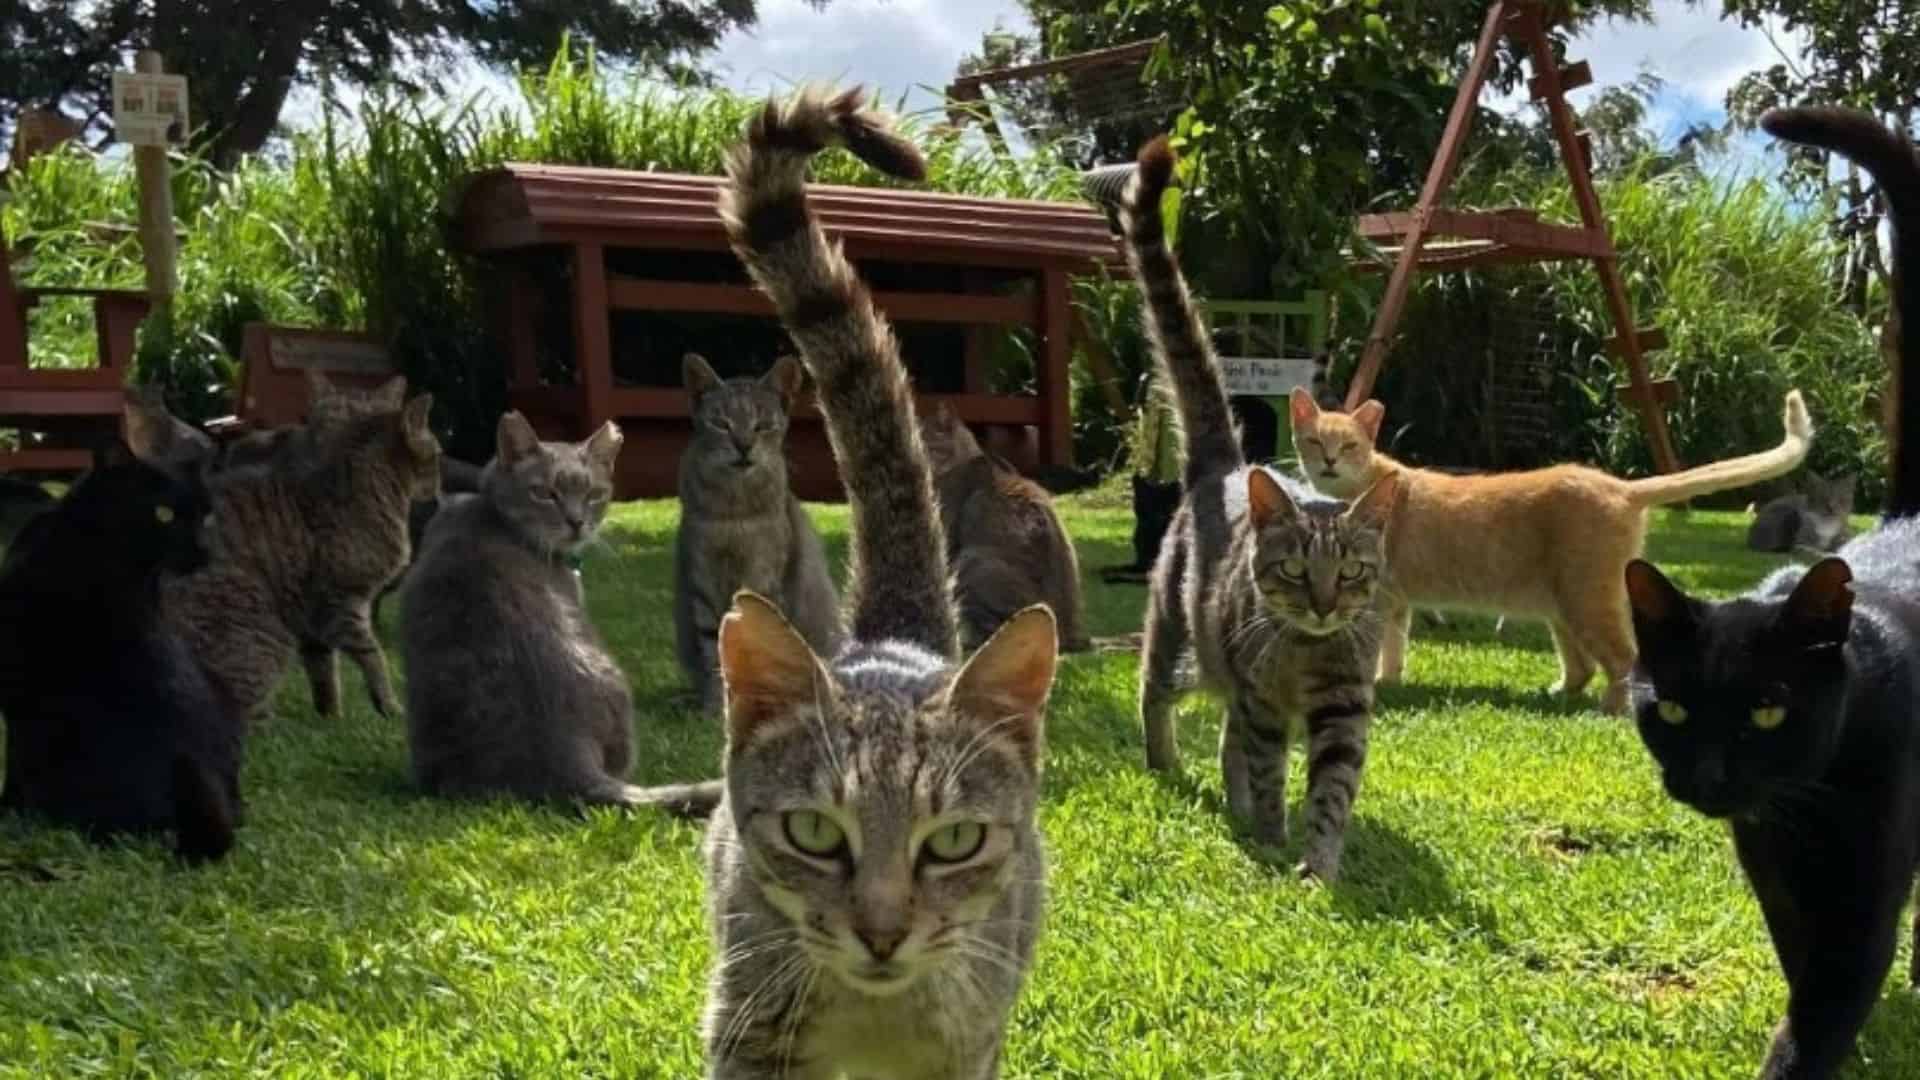 cats in cat sanctuary